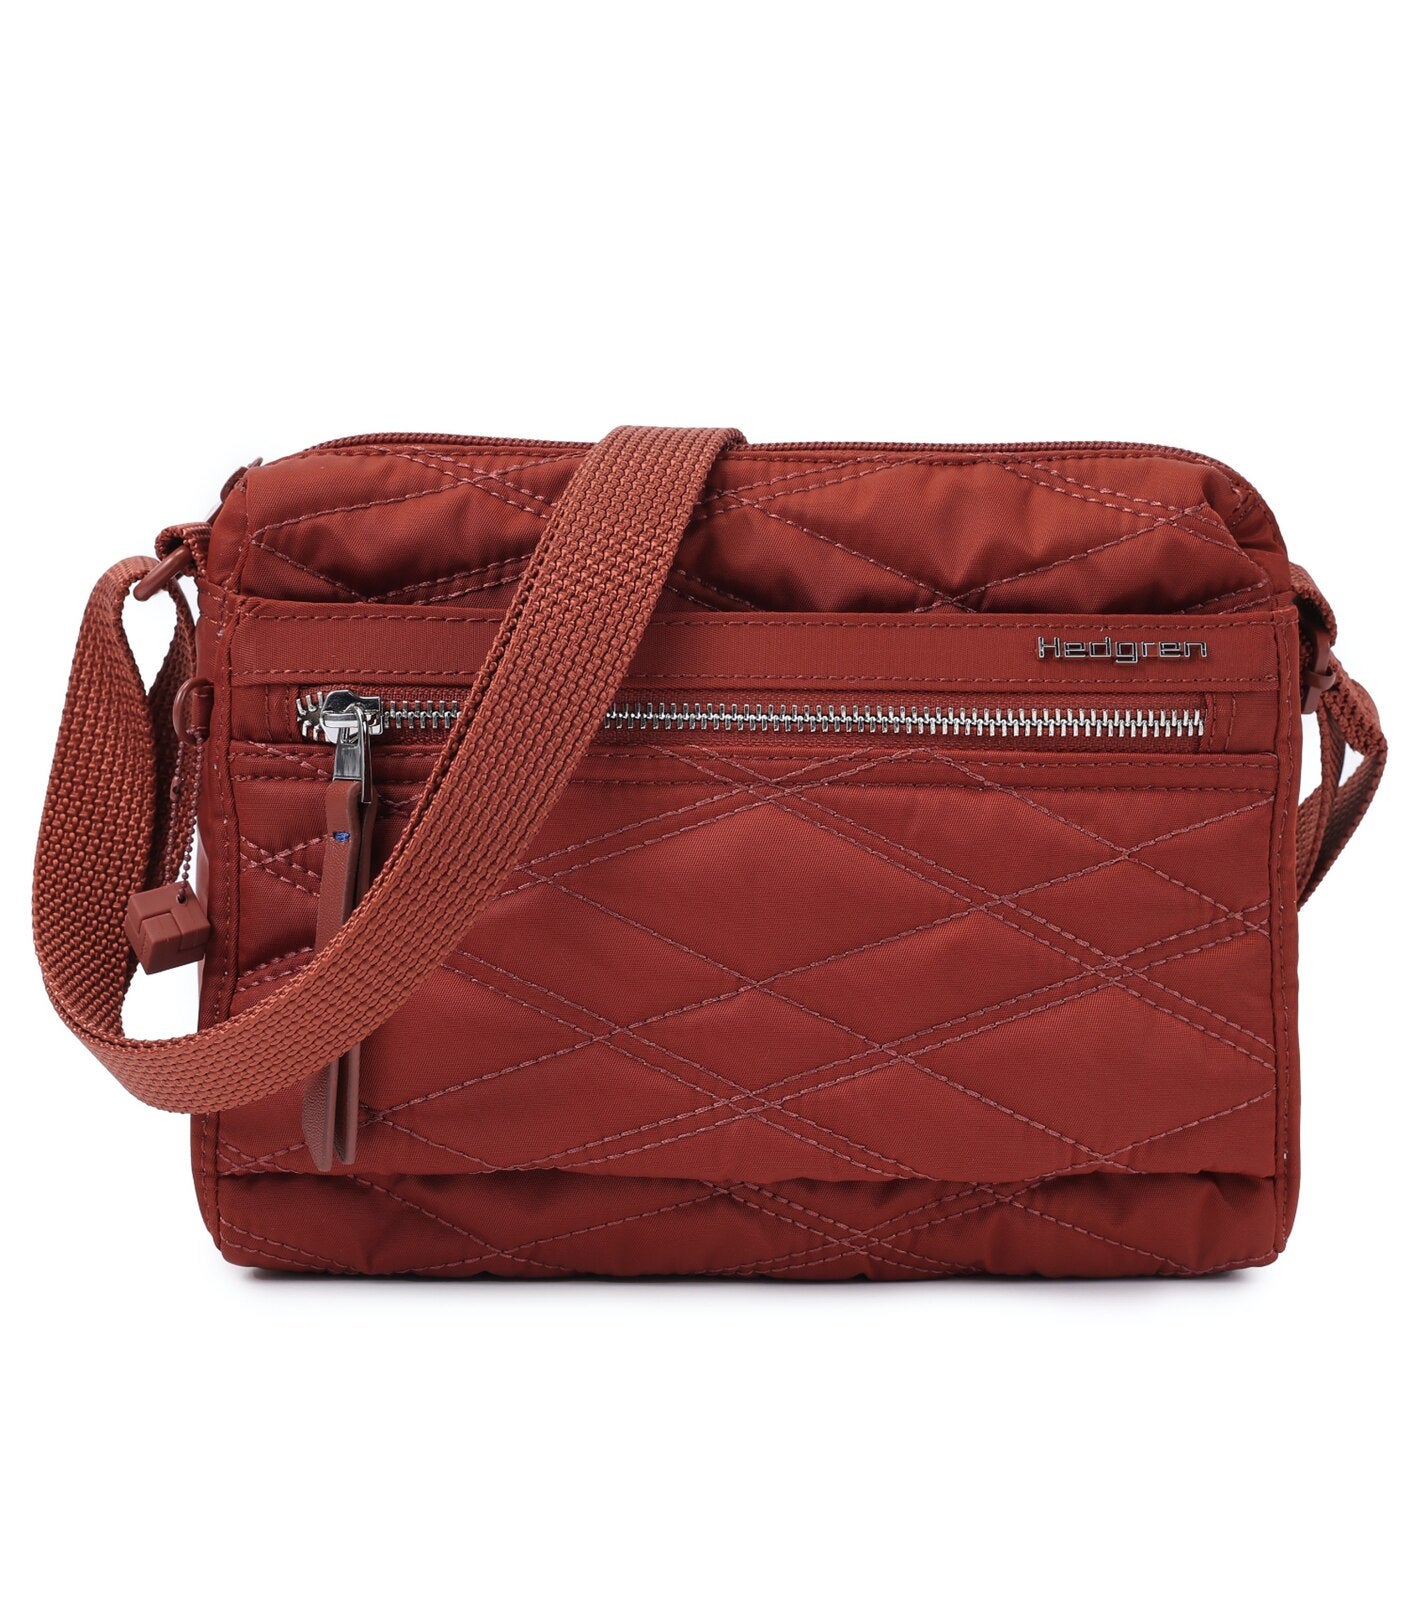 Hedgren Eye RFID Medium Shoulder Bag | Shoulder bag, Bags, Travel purse